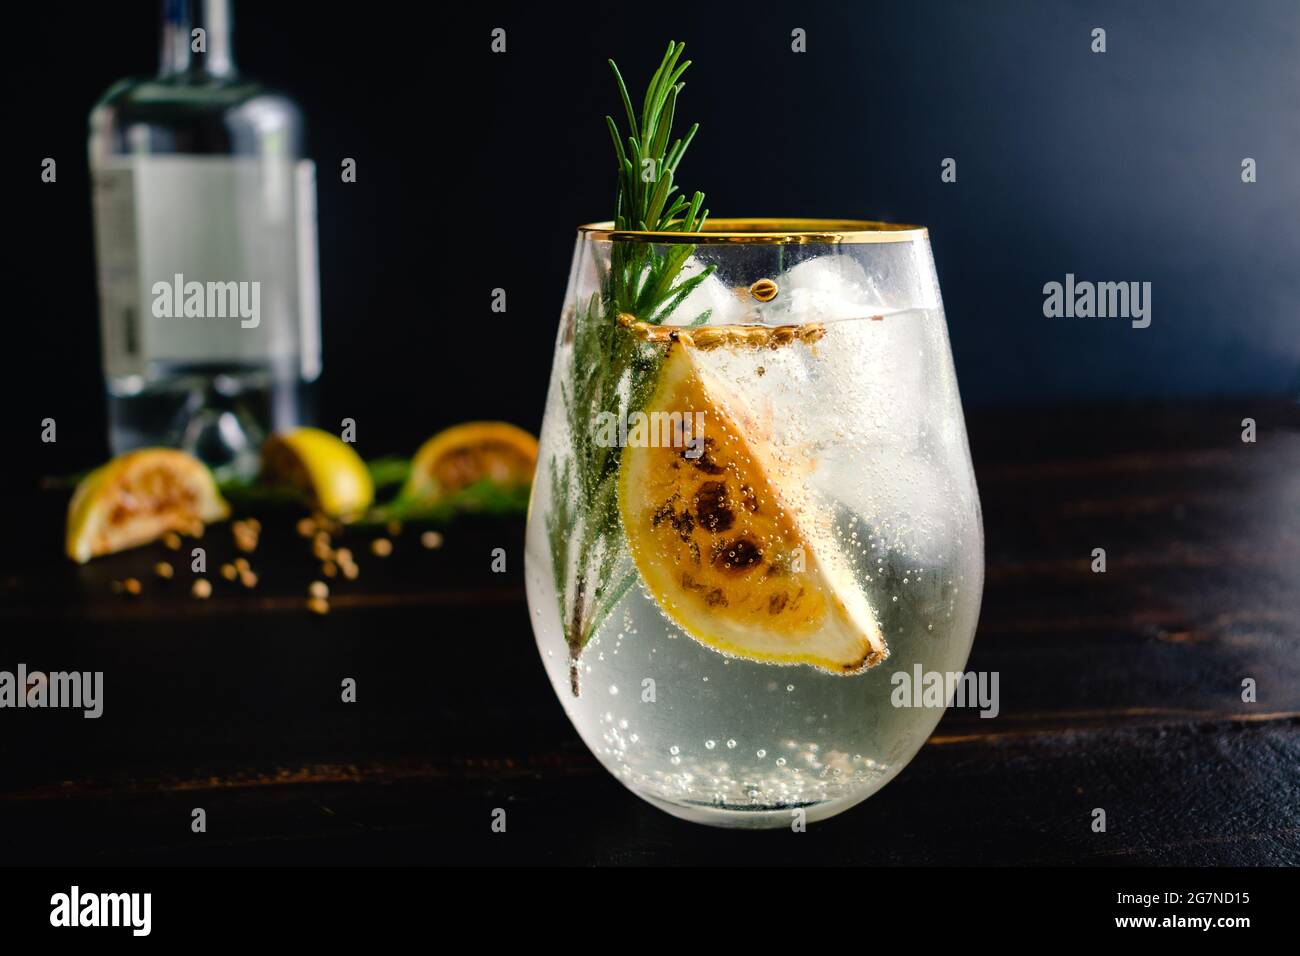 Verkohlte Zitrone, Rosmarin und Koriander Gin und Tonics: Gin und Tonic-Cocktails garniert mit verkohlten Zitronenkeilen und Aromaten Stockfoto